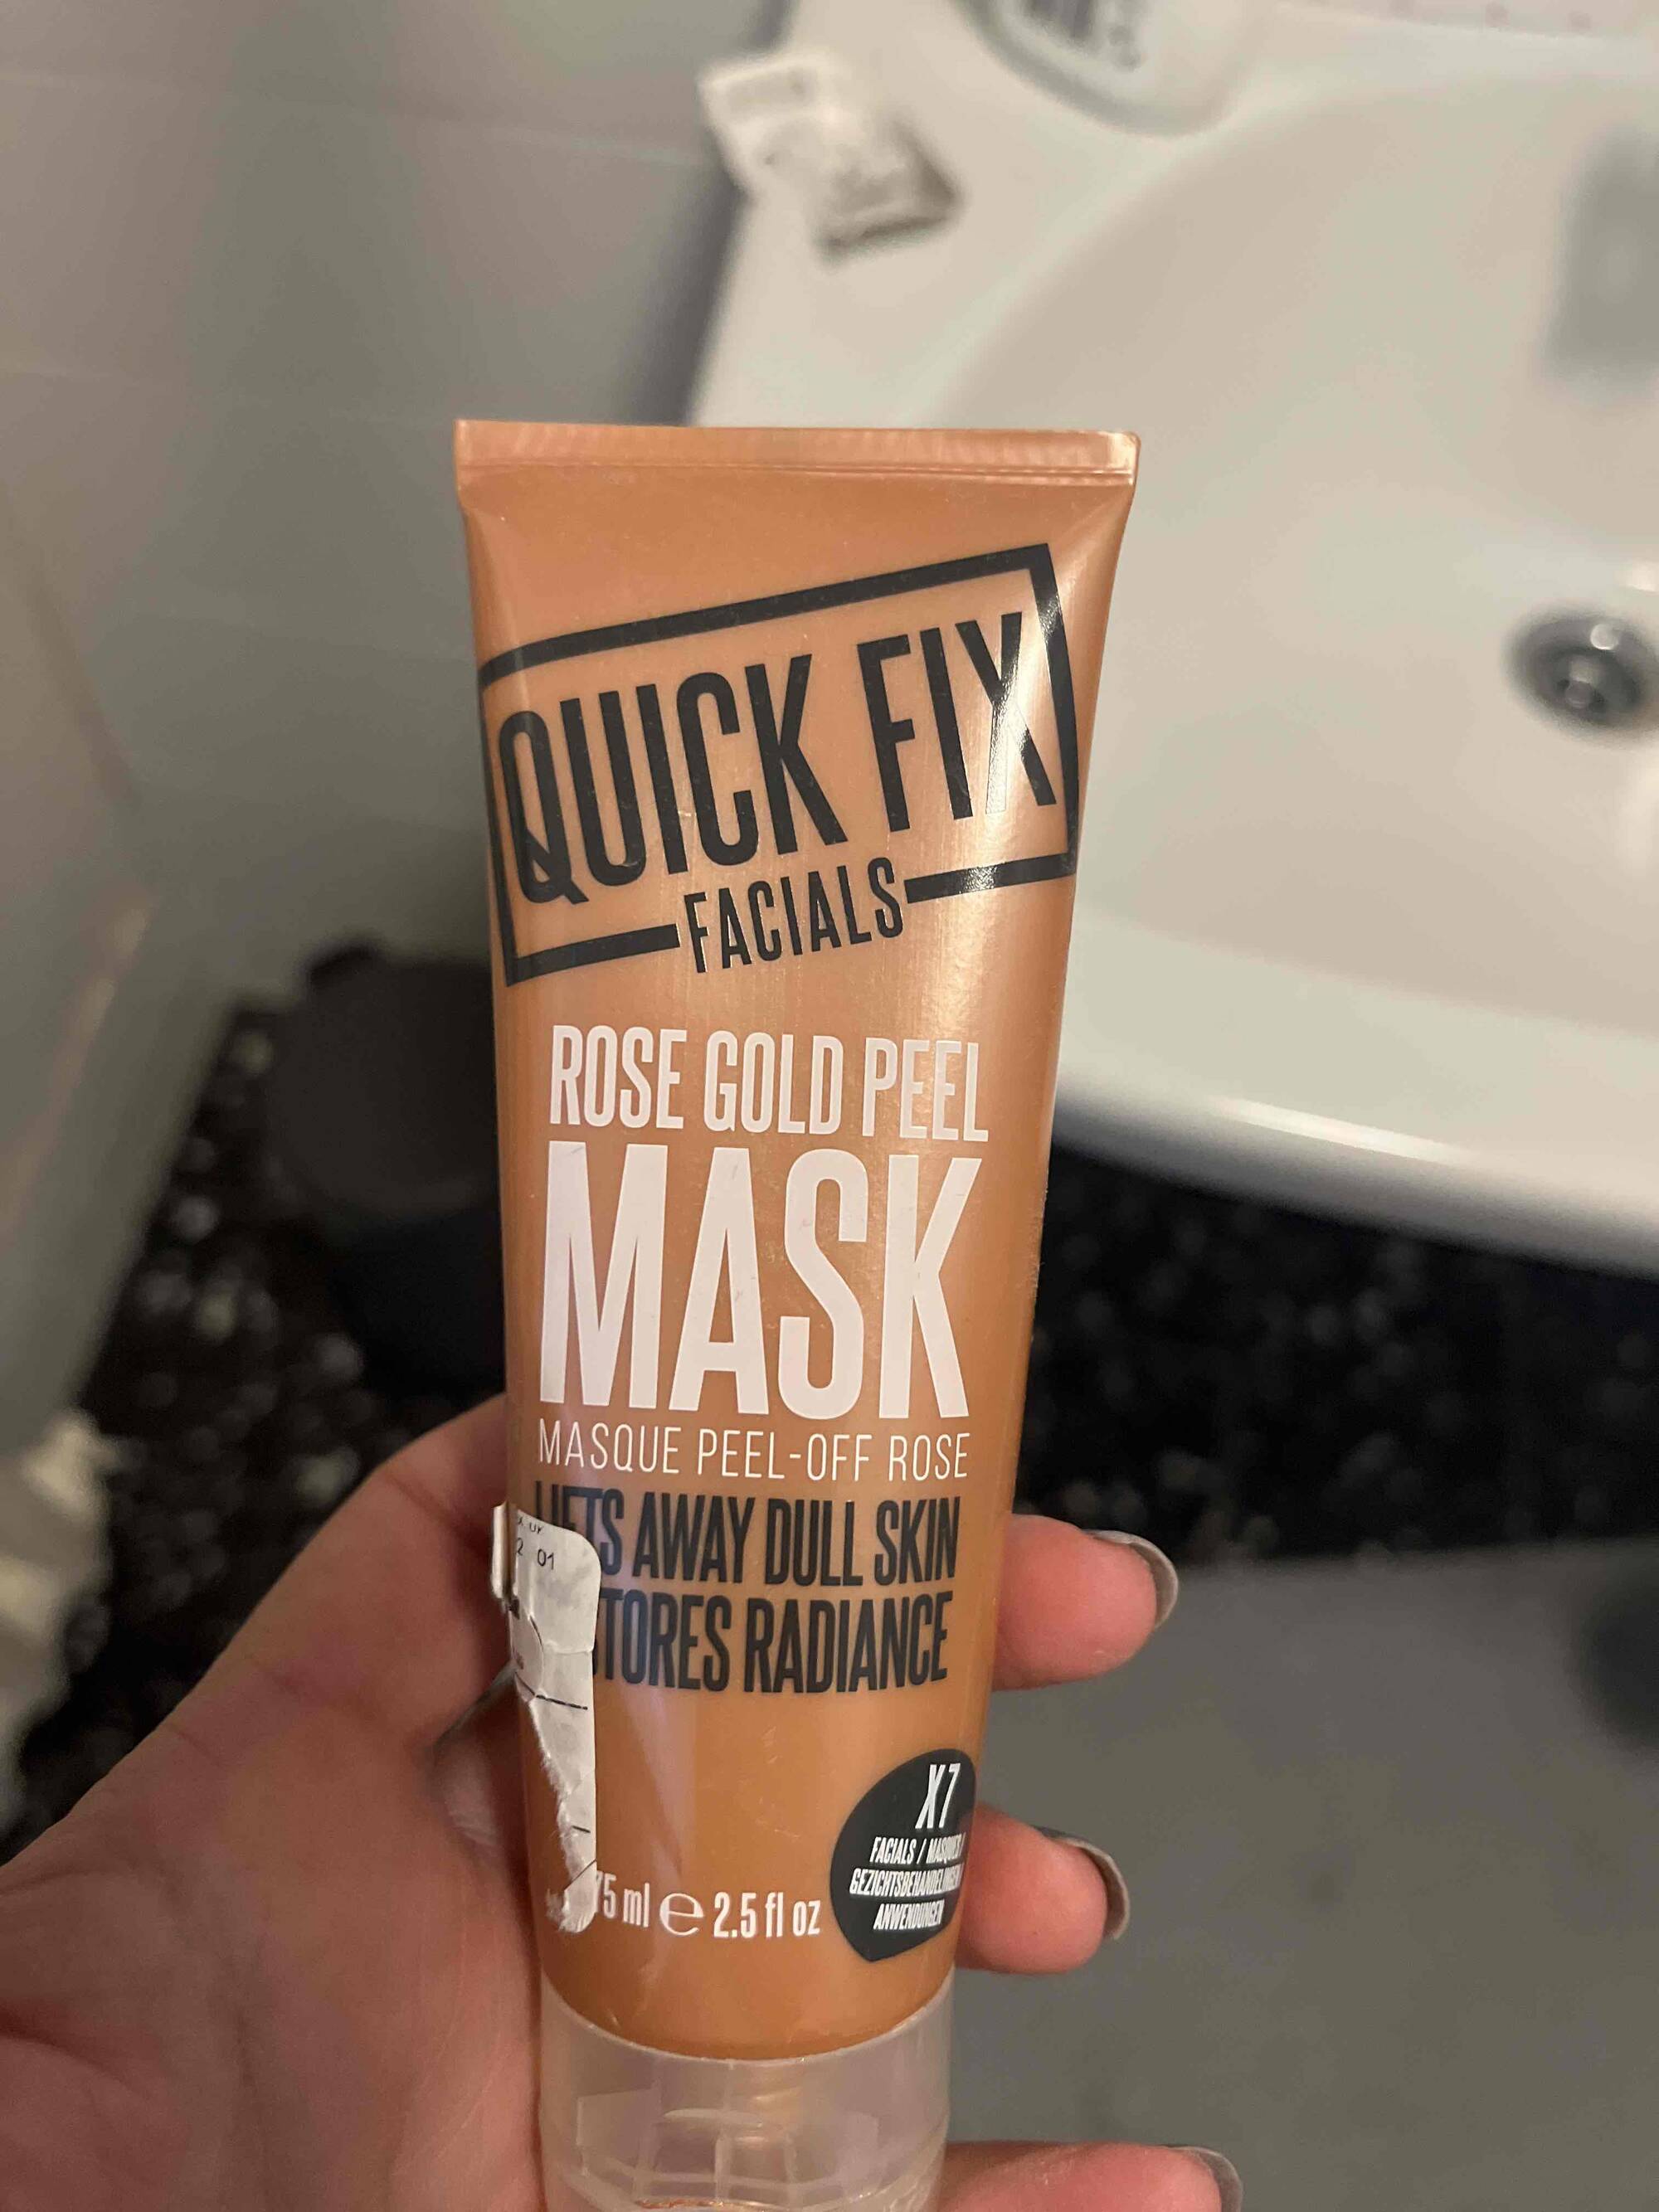 QUICK FIX FACIALS - Rose gold peel - Mask